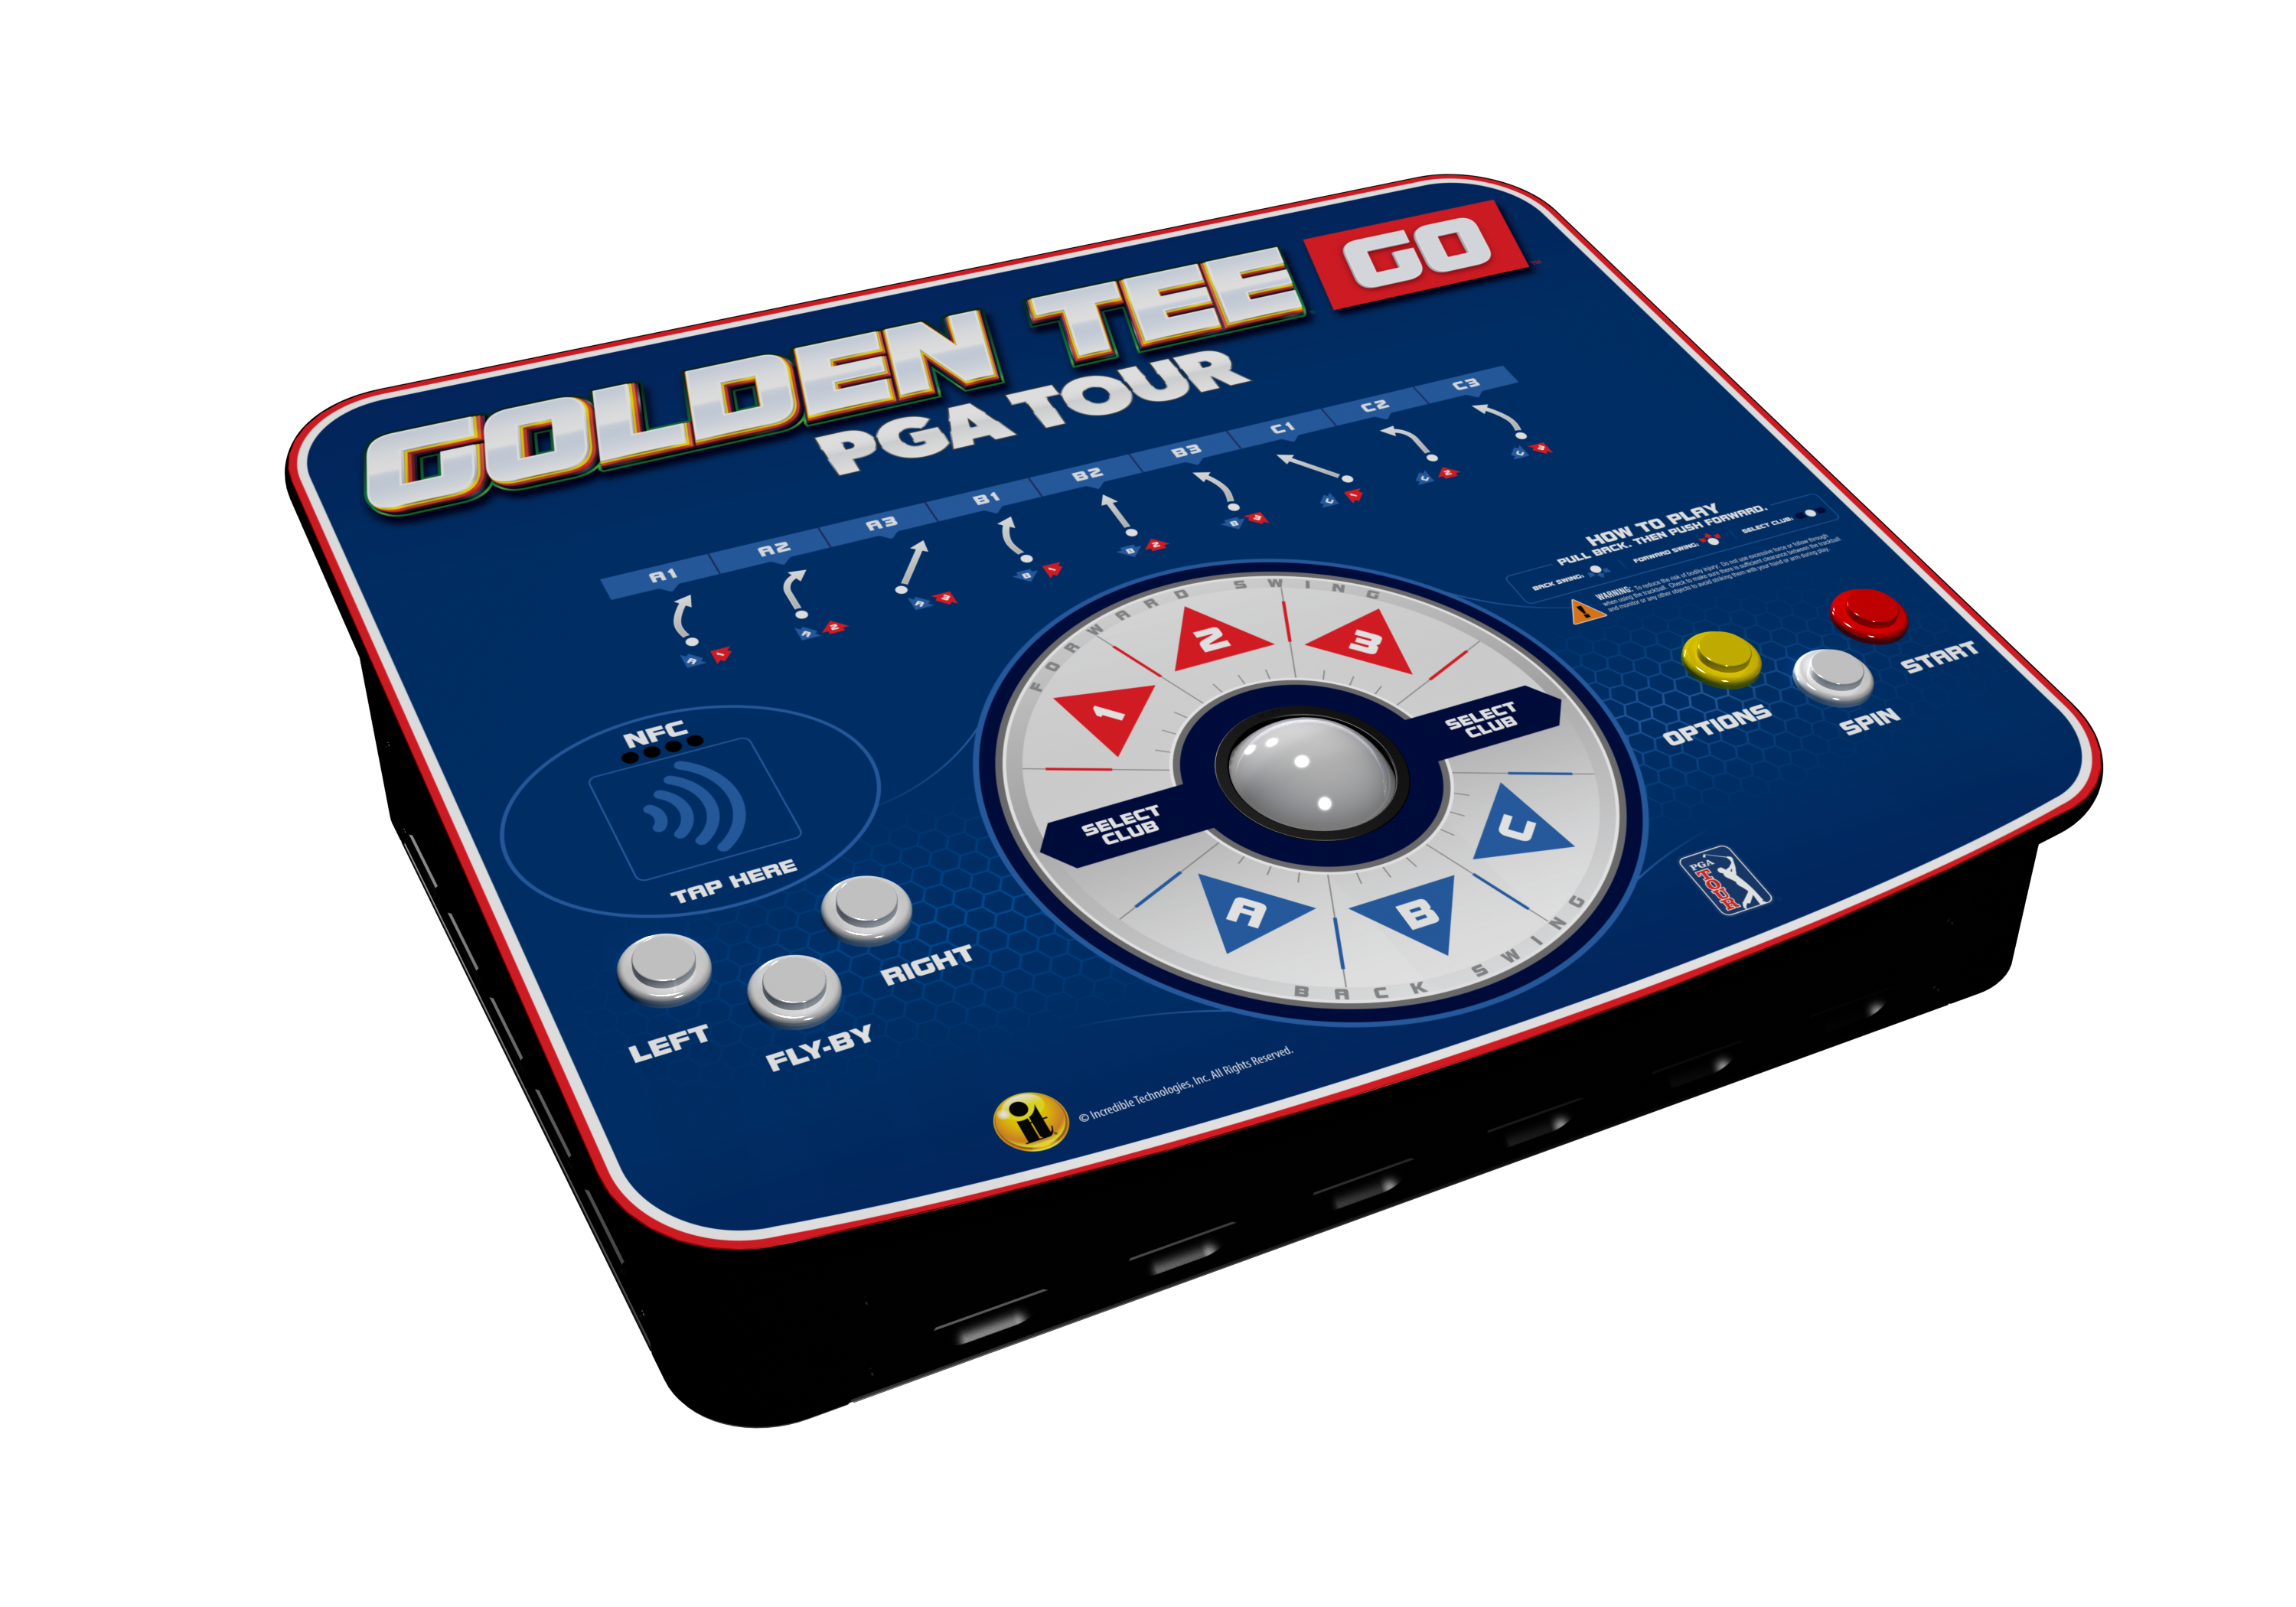 Incredible Technologies Golden Tee Go PGA TOUR Edition